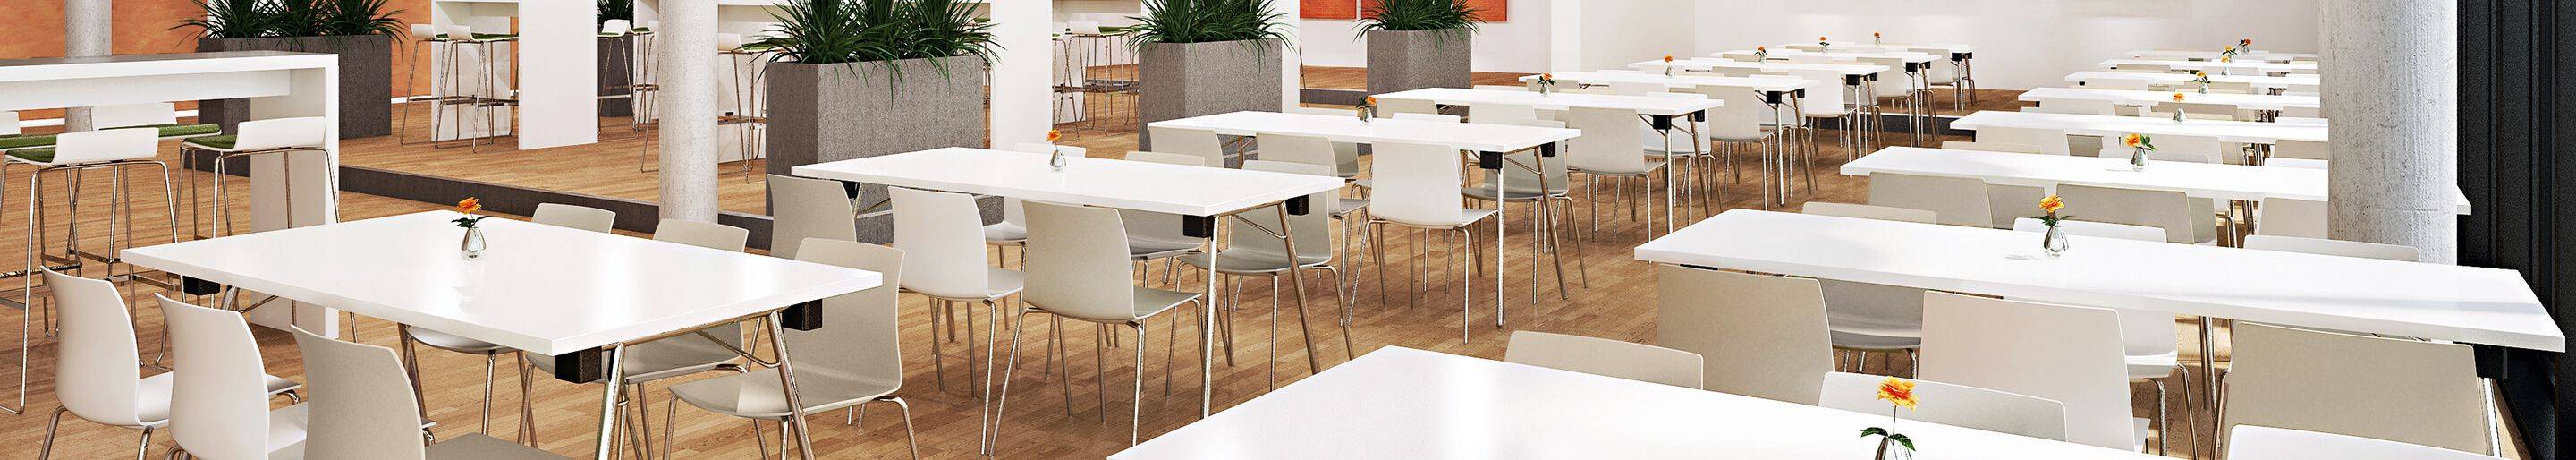 Indoor Kantinenmöbel für Ihre Gastronomie, Hotellerie und Büro